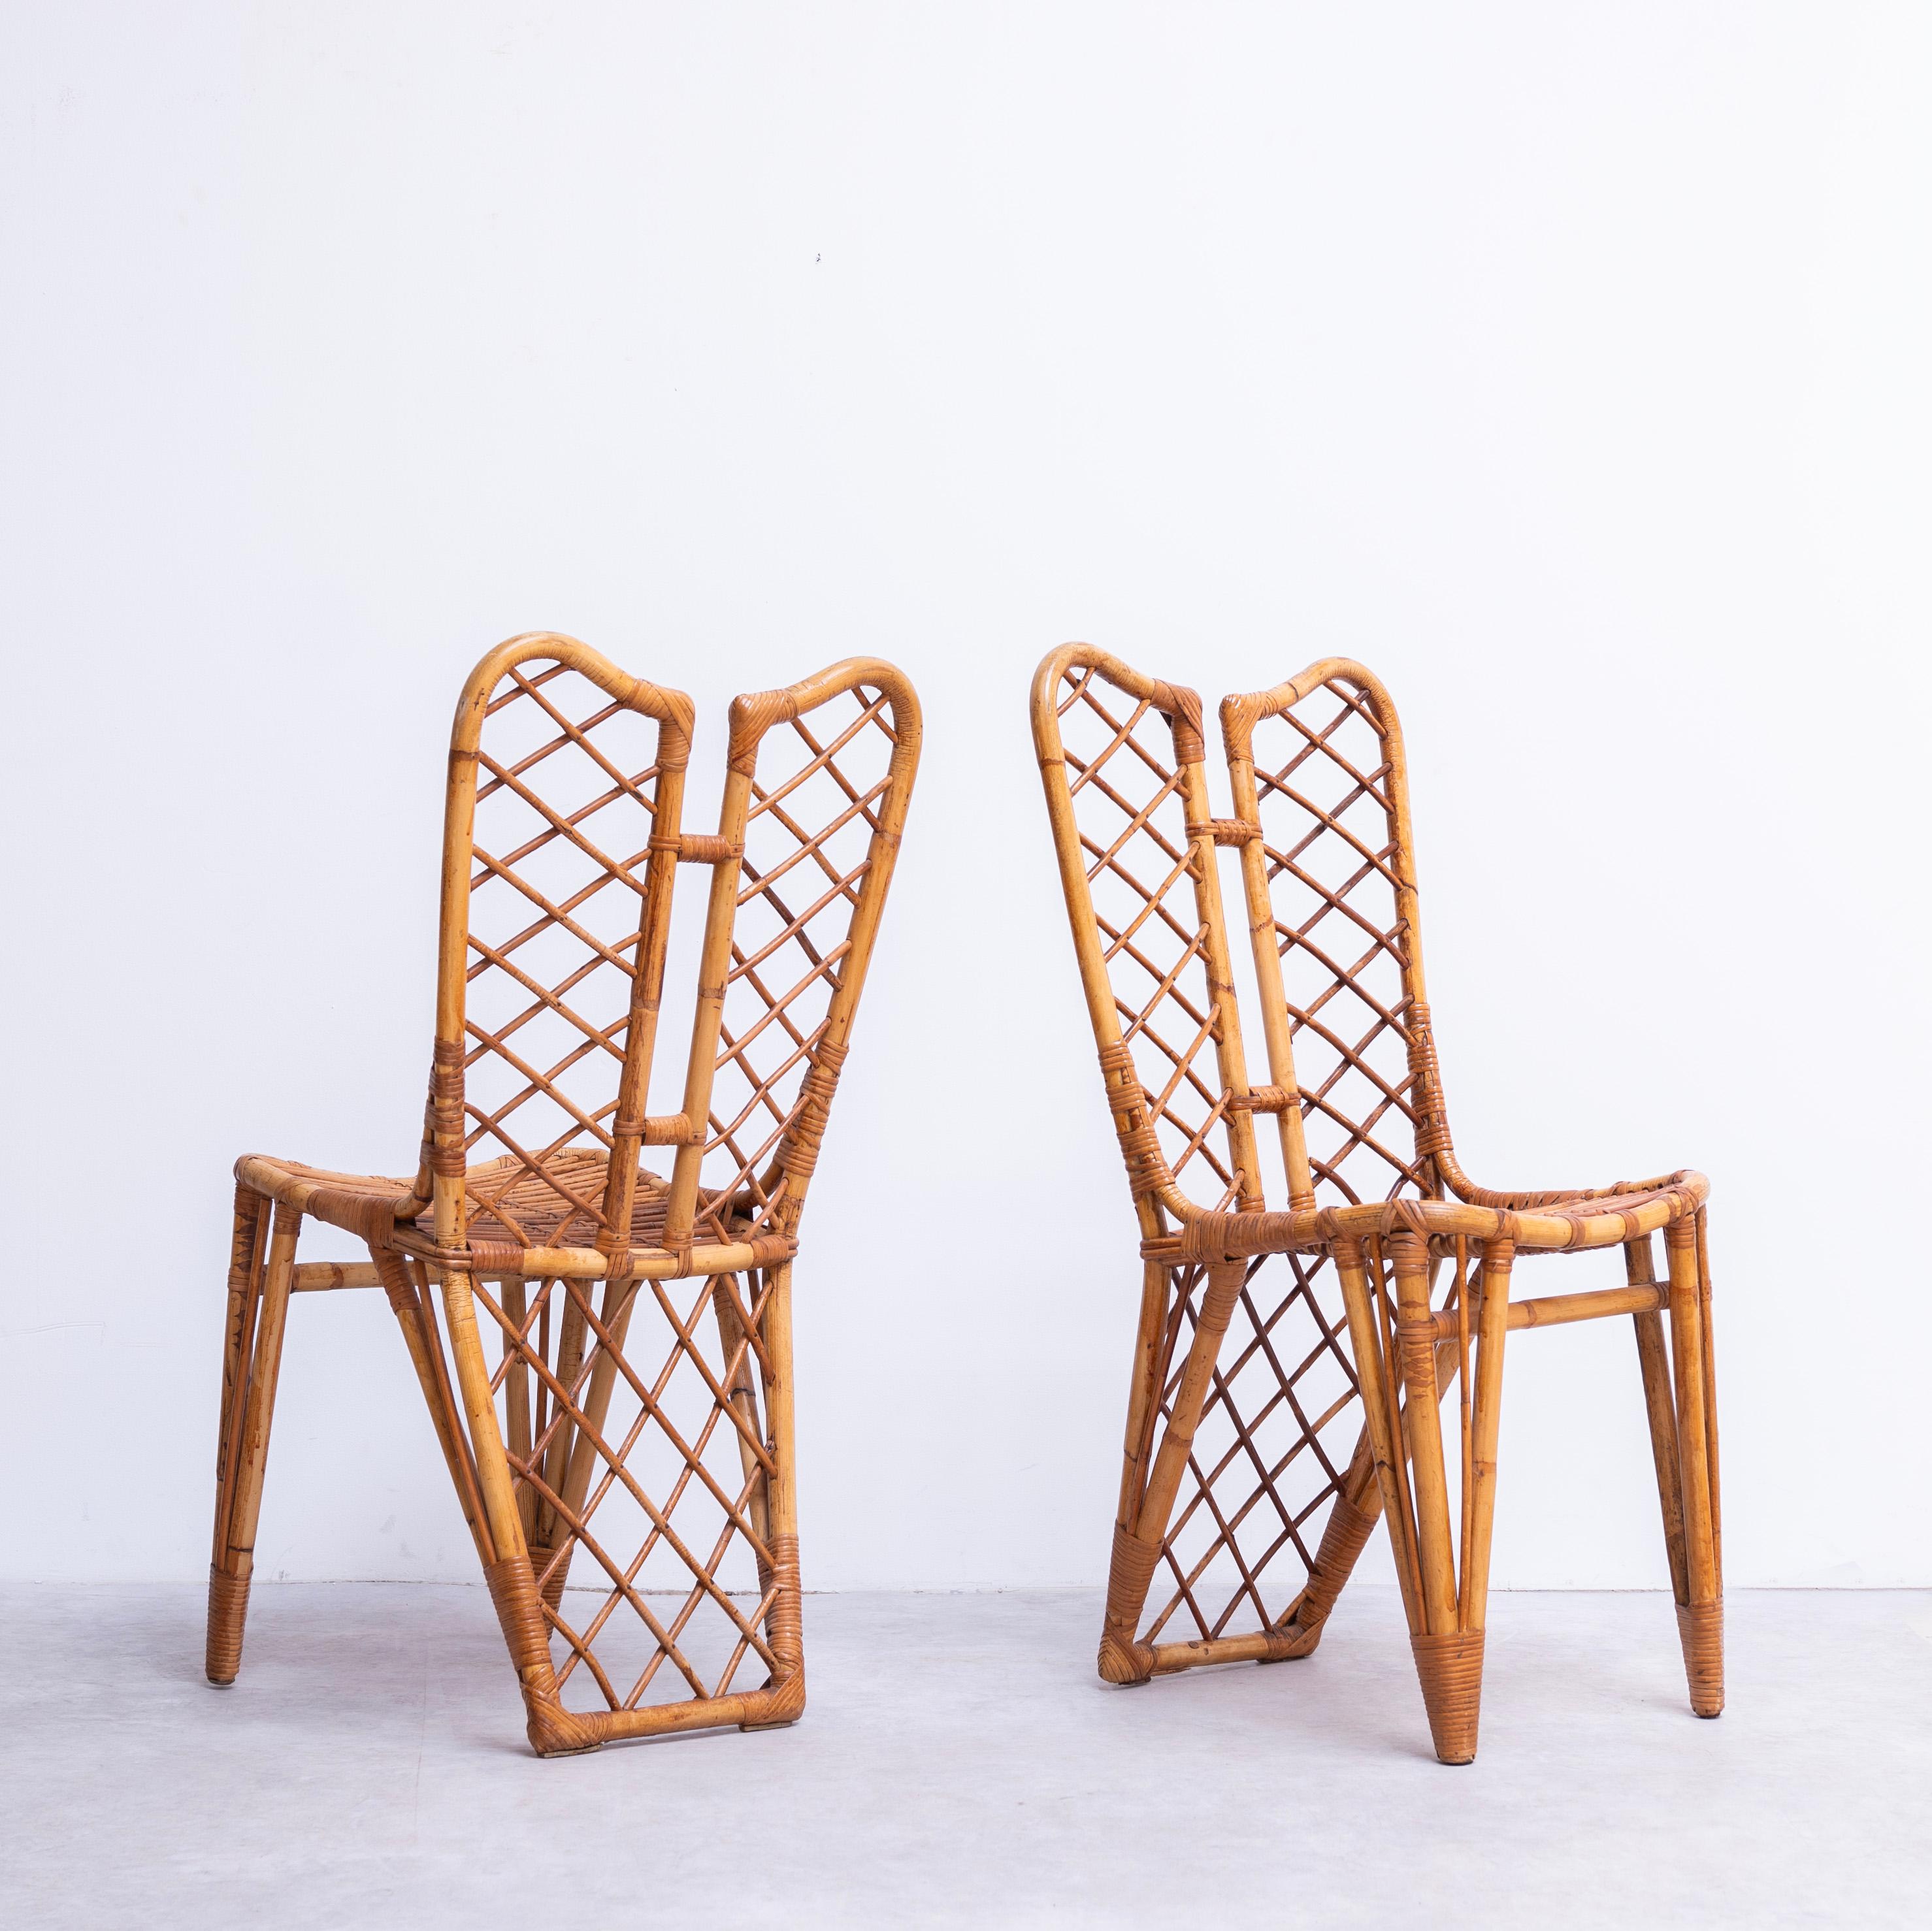 Ein Satz von zwei Esszimmerstühlen aus Bambus und Rattan.
Das auffällige Rücken-an-Rücken-Design der Beine.
Die detailreiche Weberei ist ebenfalls ausgezeichnet, so dass diese Stühle von hoher Qualität sind.

Die Stühle sind mit dem originalen